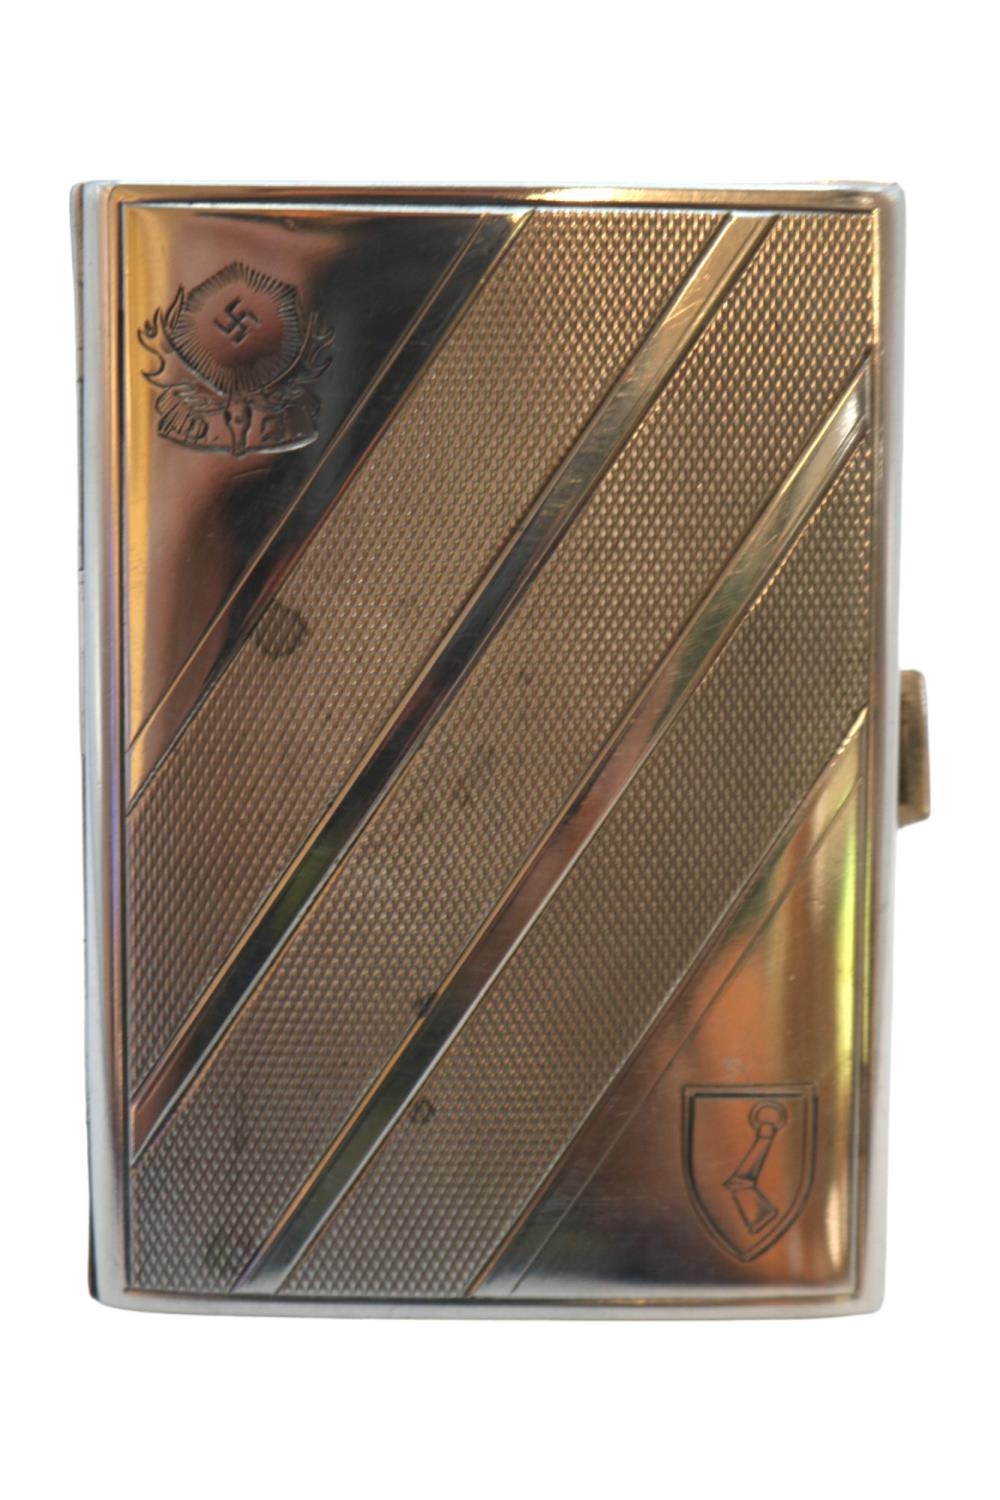 WWII German Third Reich Hermann Wilhelm Goring Silver cigarette case engraved with Goring's crest.